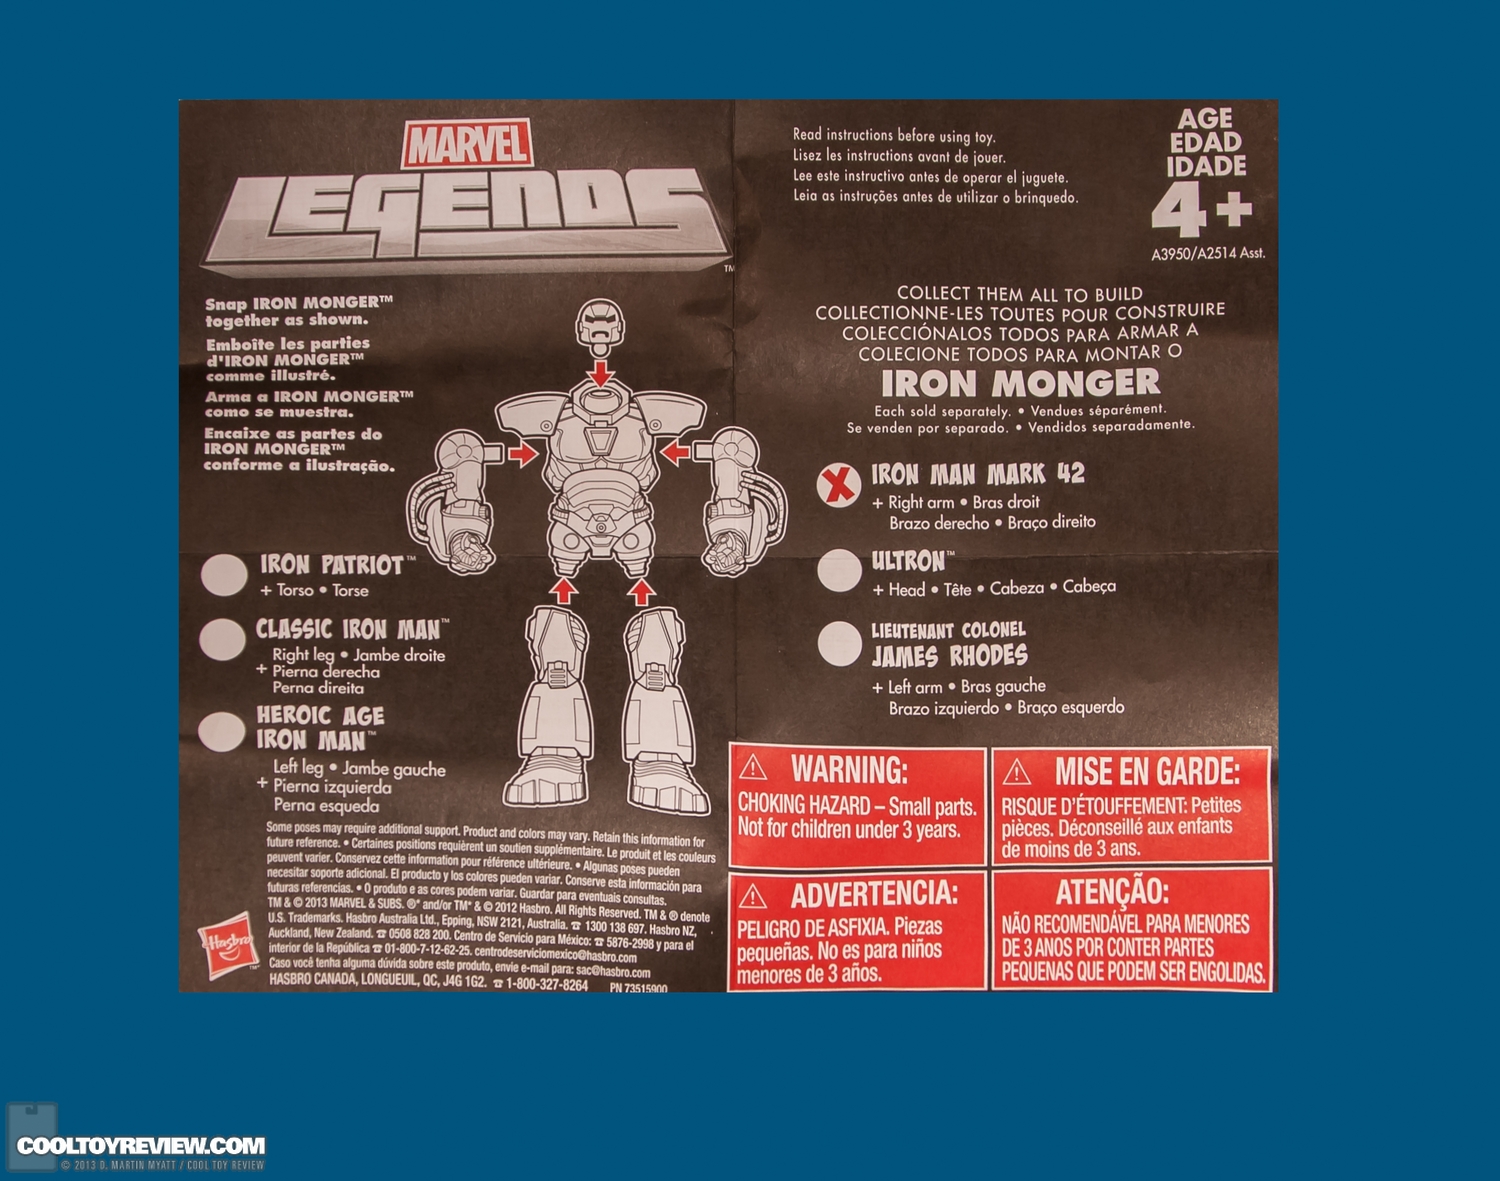 Iron-Man-Mark-42-Marvel-Legends-Iron-Monger-Series-010.jpg